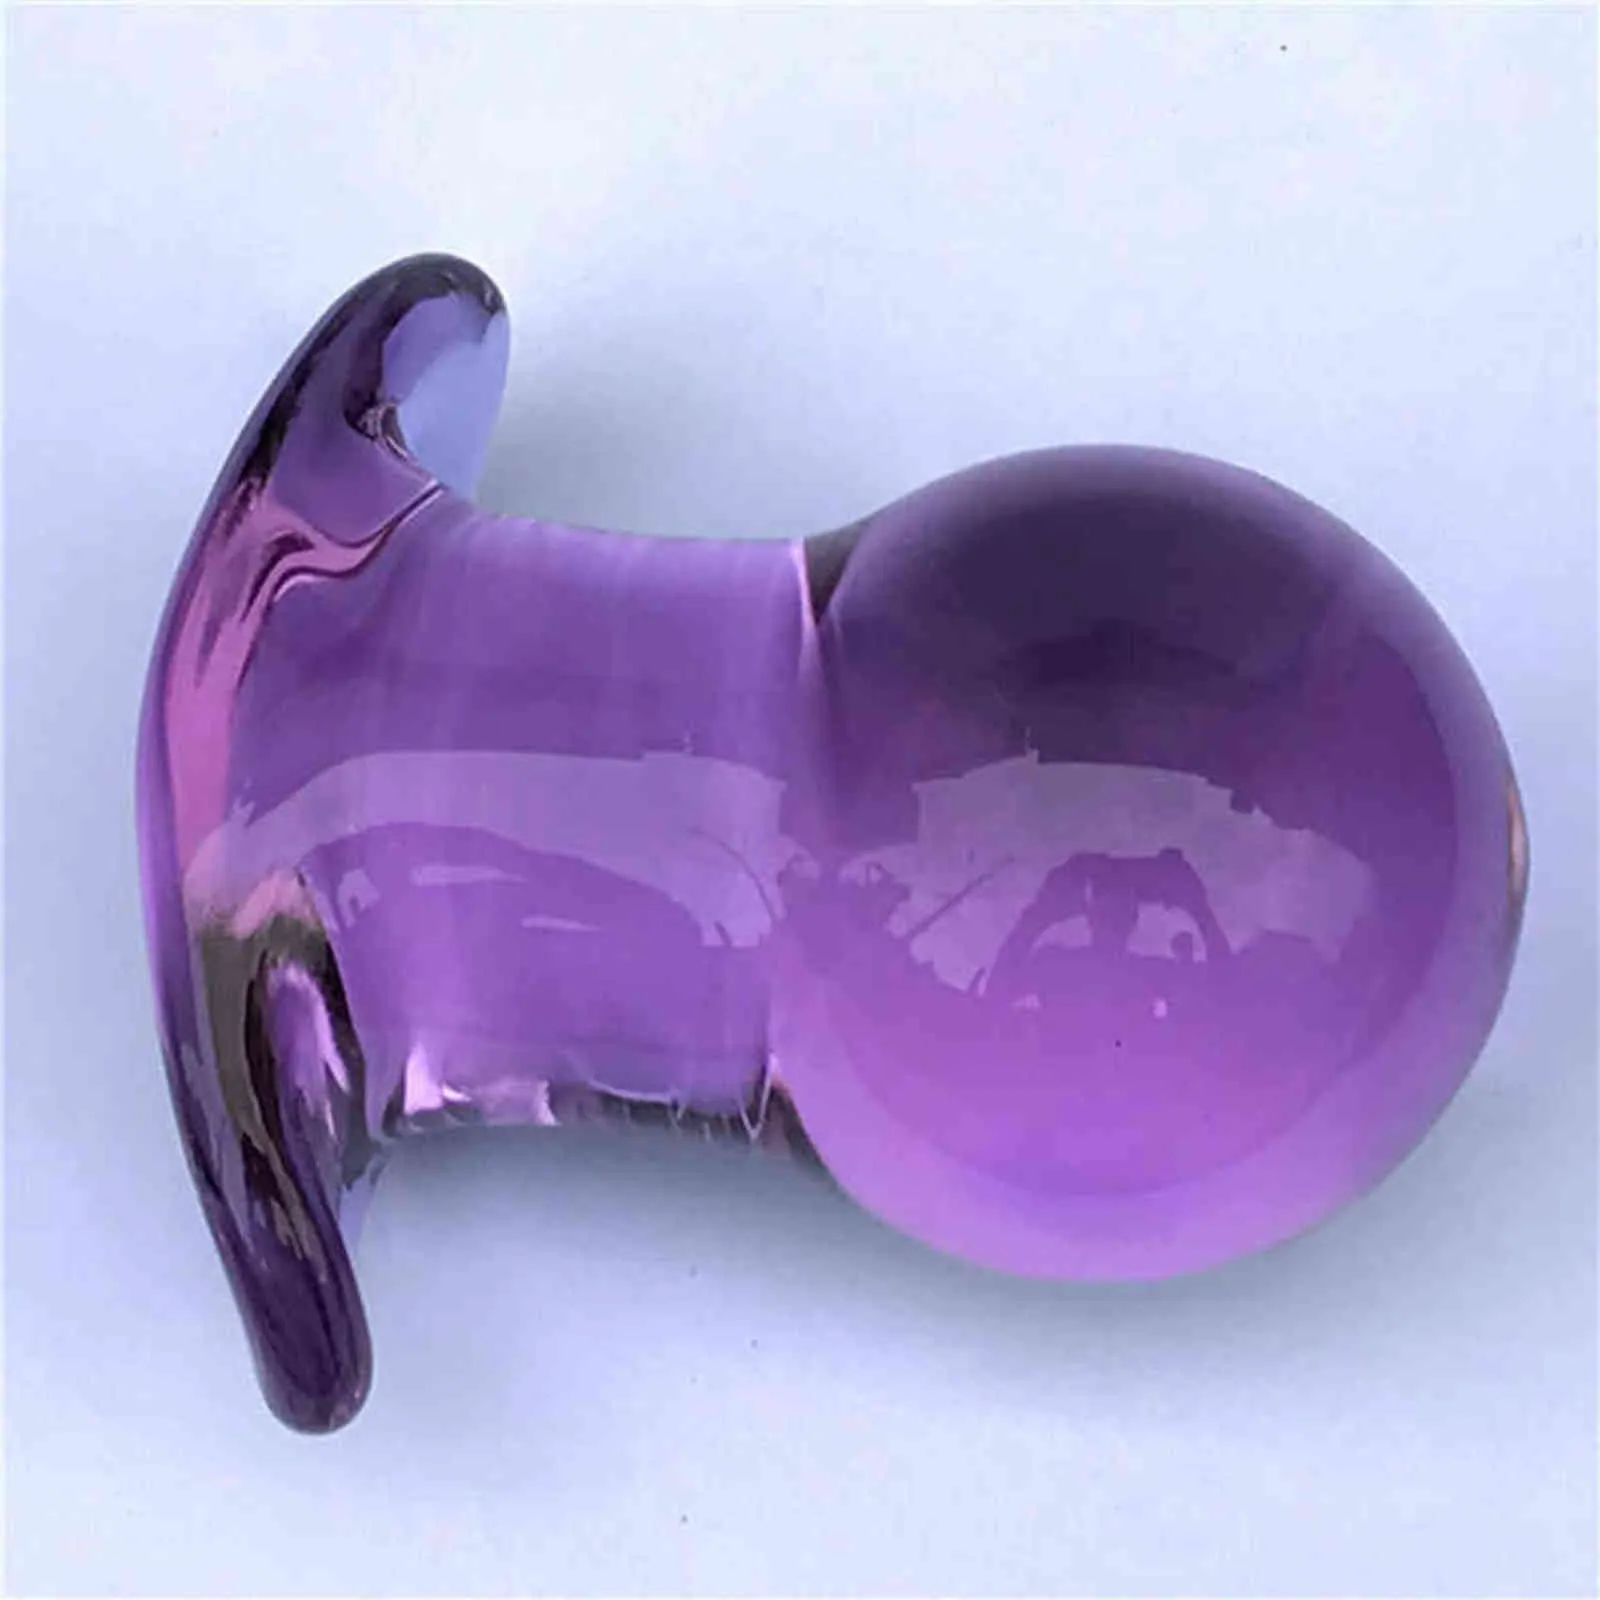 紫色のクリスタル50mmラージバットプラグ膣ボールガラスディラタドールアナルディルドビーズプロスタタマッサージバットプラグゲイセックス2111301738535